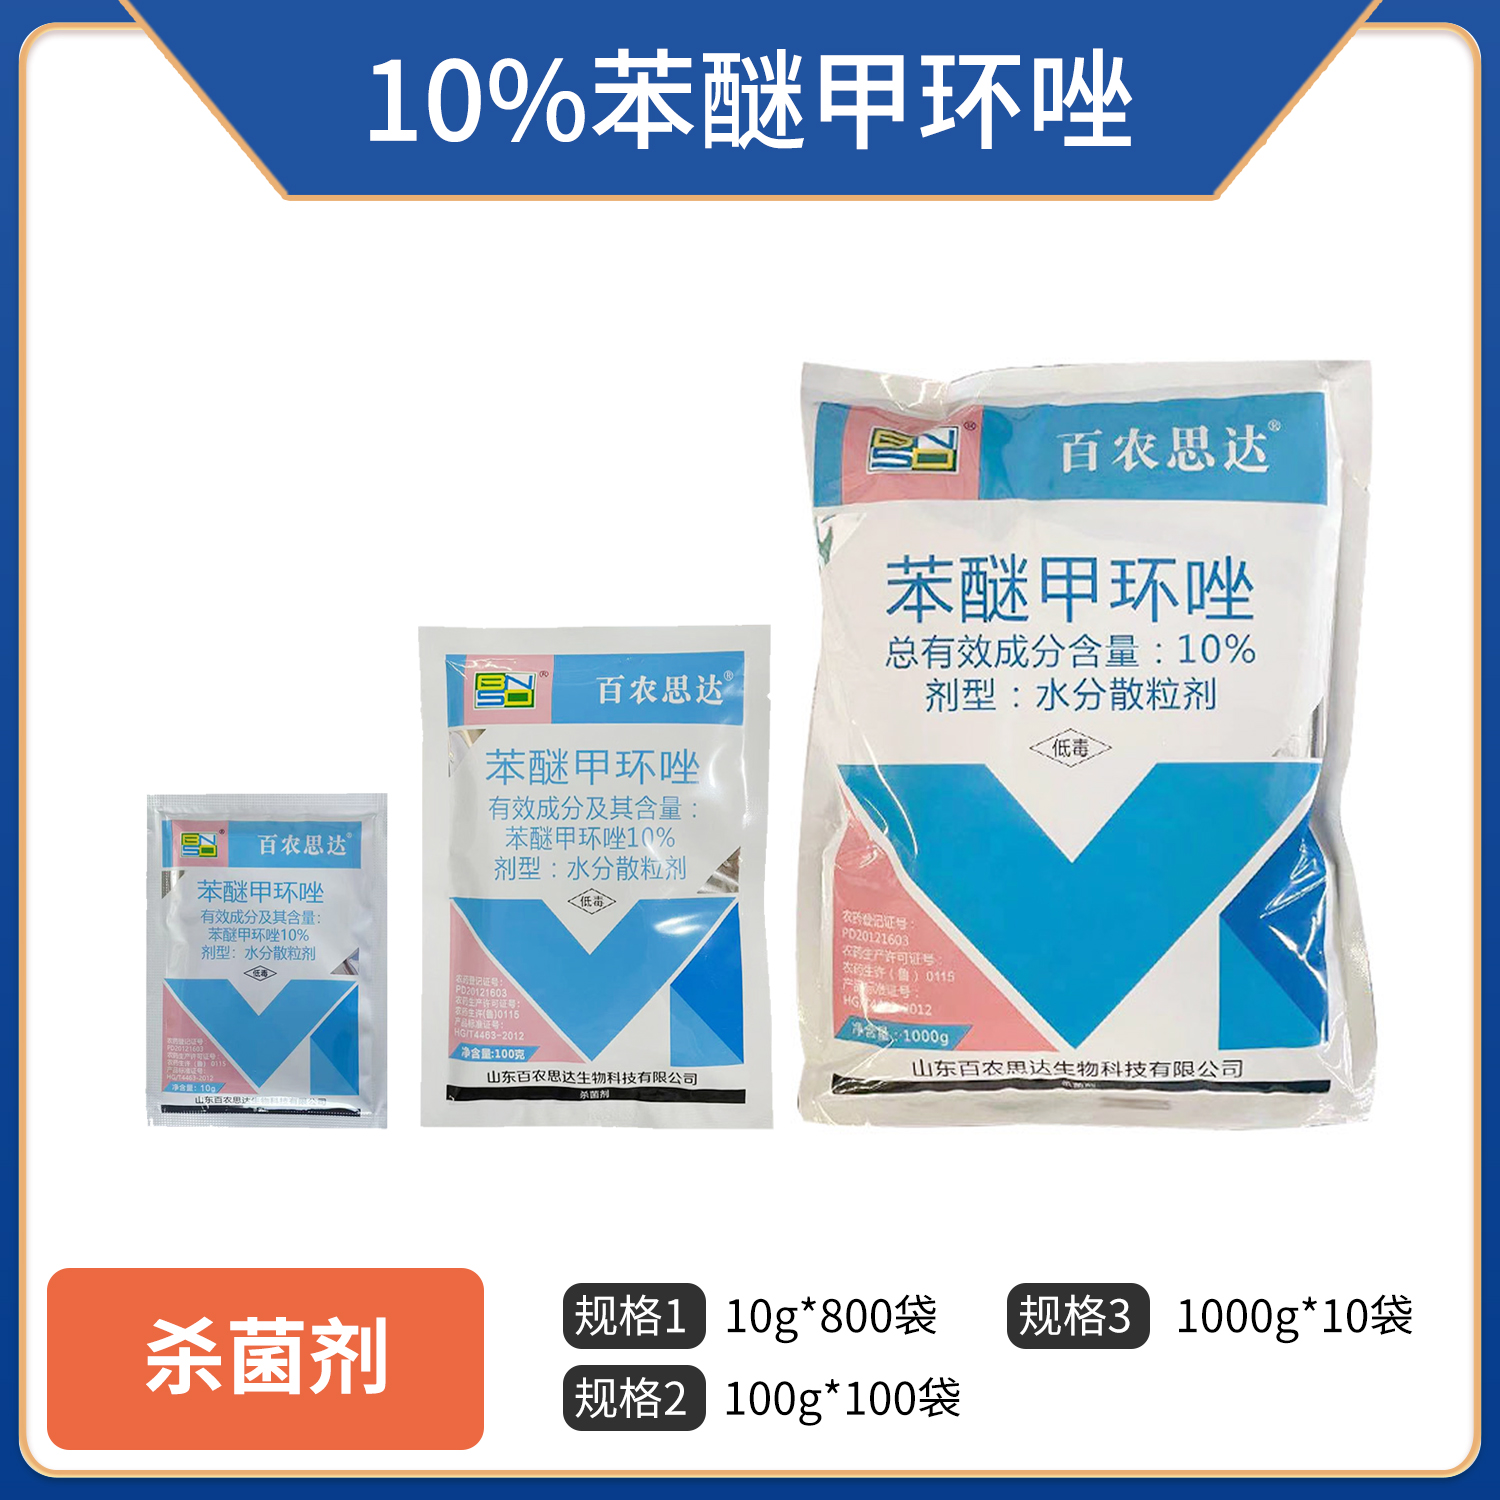 百农思达-10%苯醚甲环唑-100g